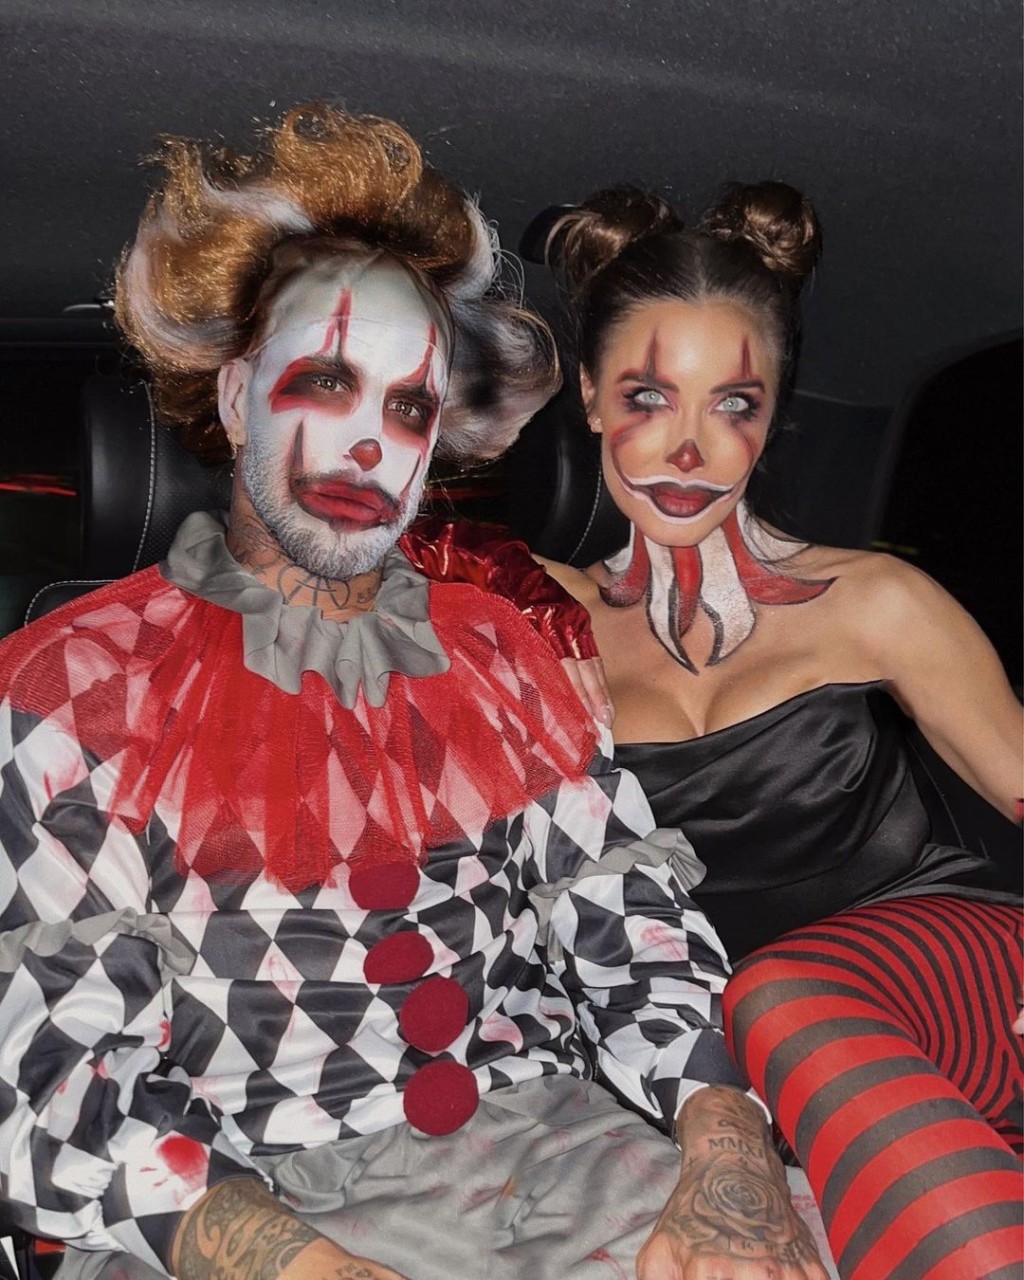 巴黎聖日耳門中堅沙治奧拉莫斯與名模妻子露芘奧的裝扮則以小丑為主題，從前者上載的影片可見，二人的化妝更由露芘奧親自一手包辦，拉莫斯甚至戴上假髮，製作認真。IG圖片